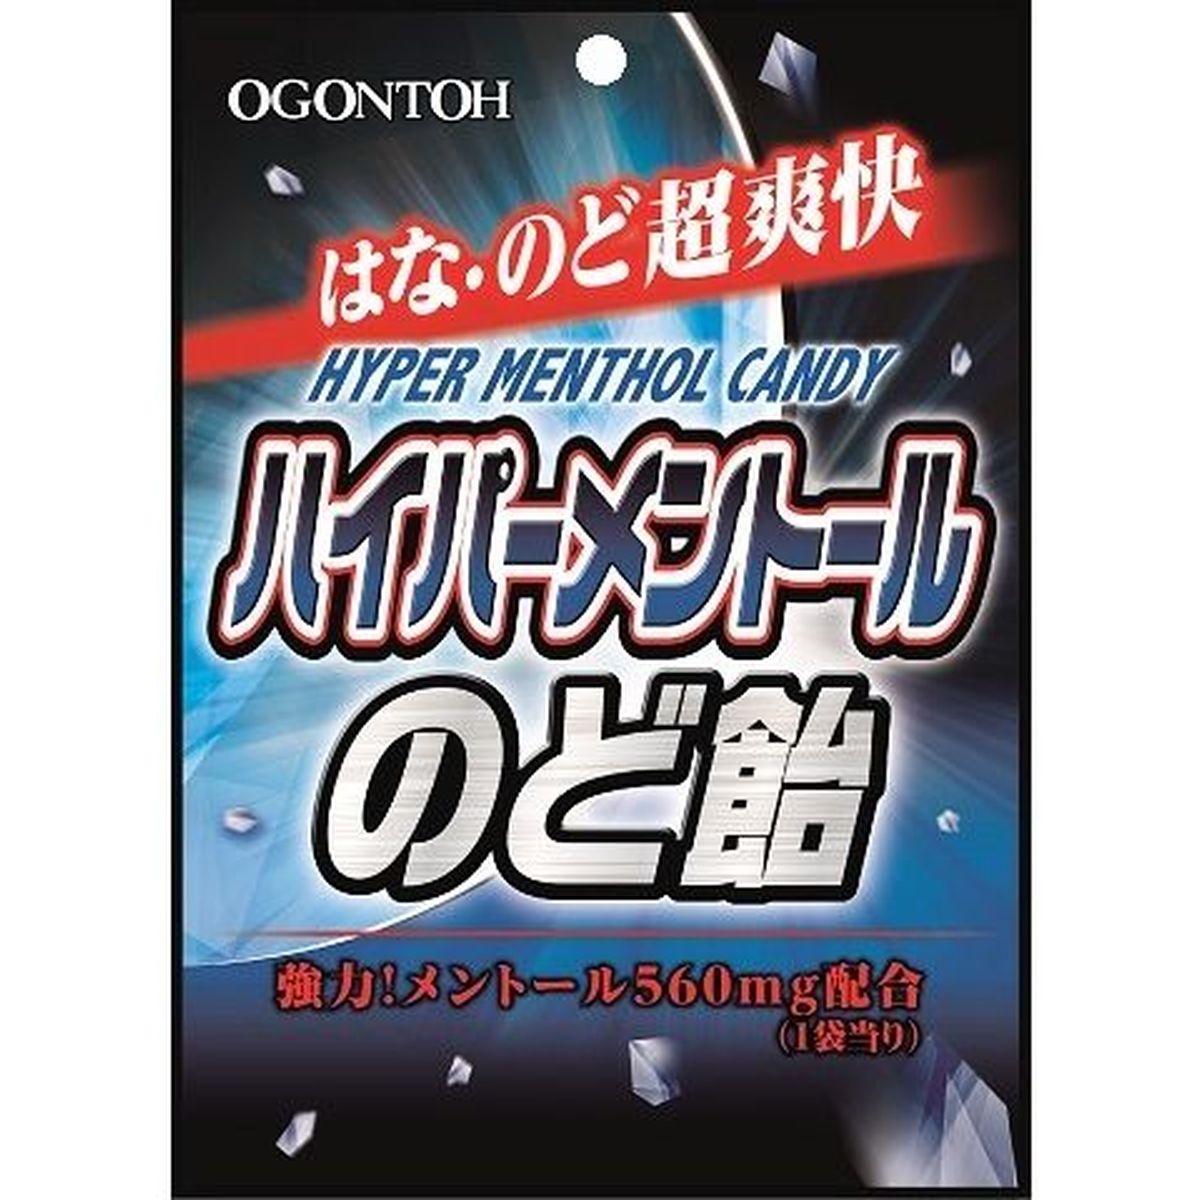 【10個入リ】黄金糖 ハイパーメントールノド飴 80g